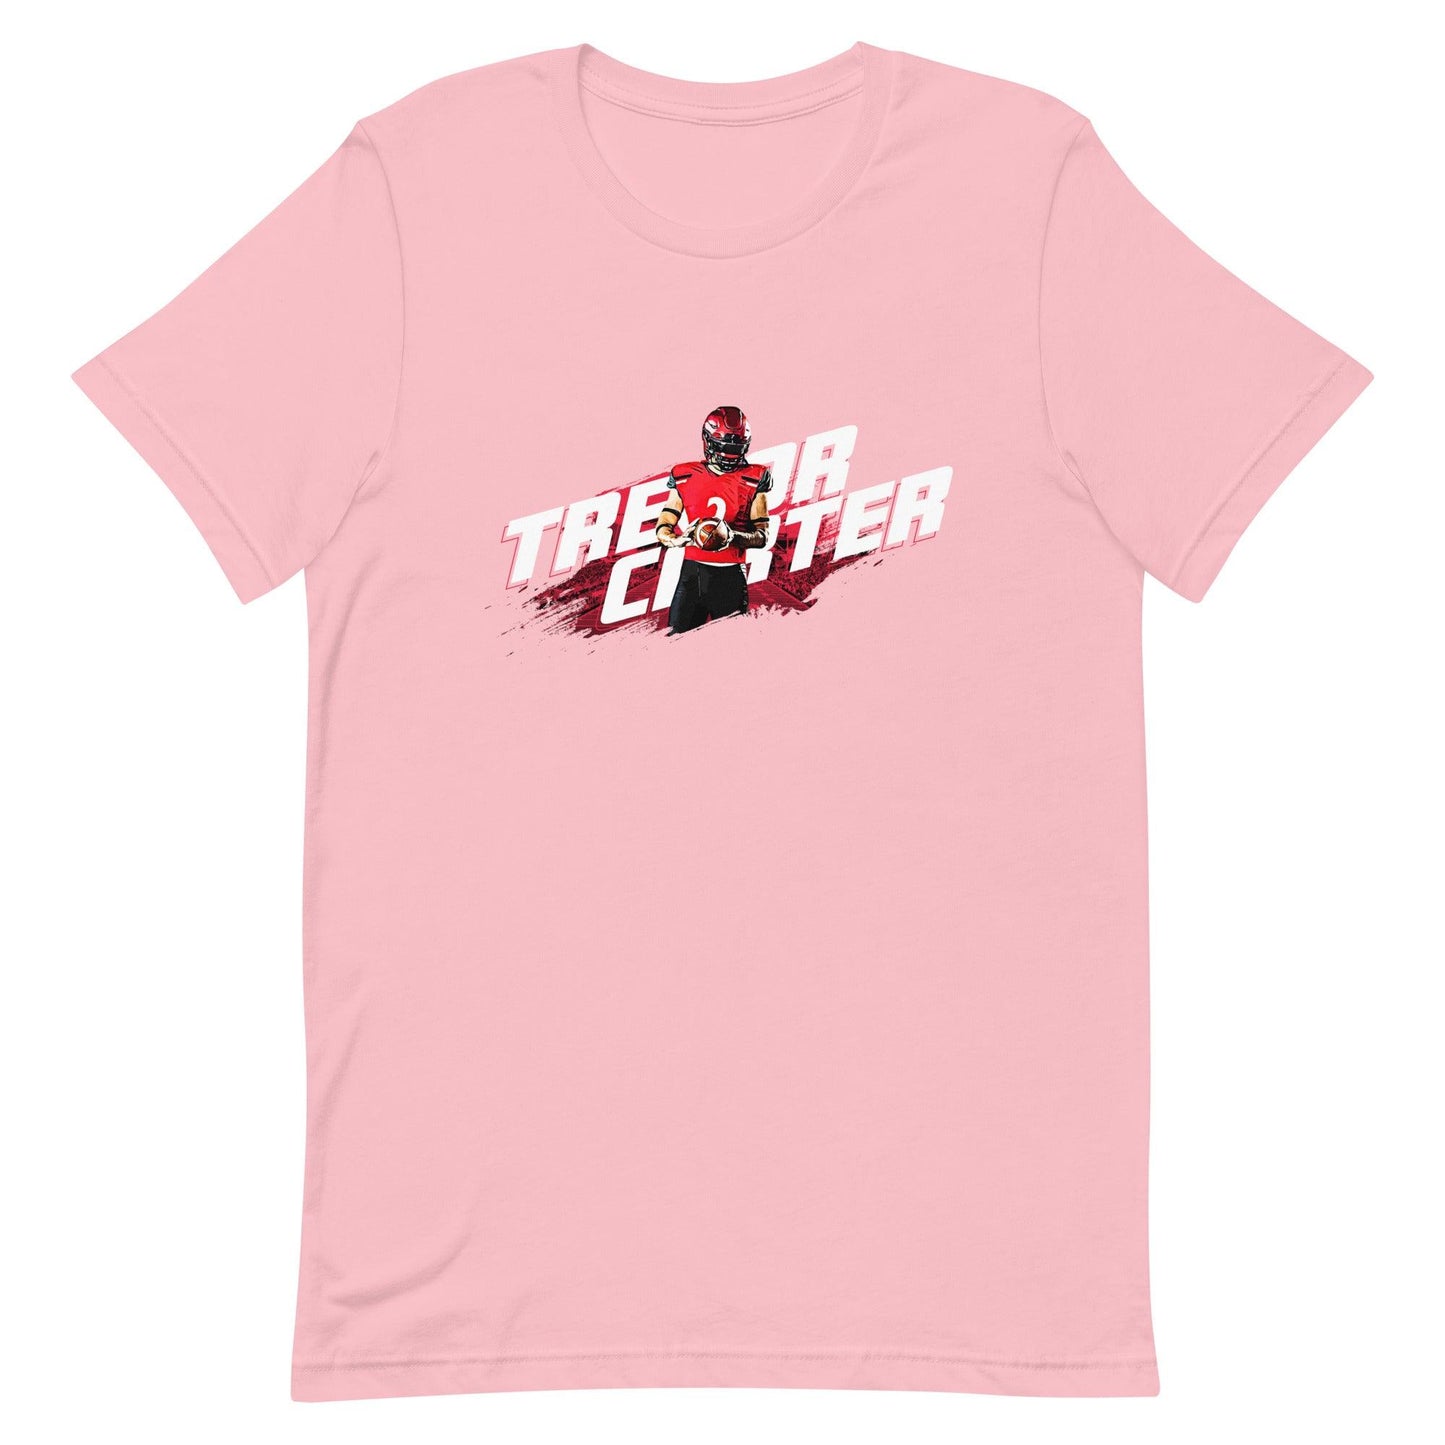 Trevor Carter "Gameday" t-shirt - Fan Arch